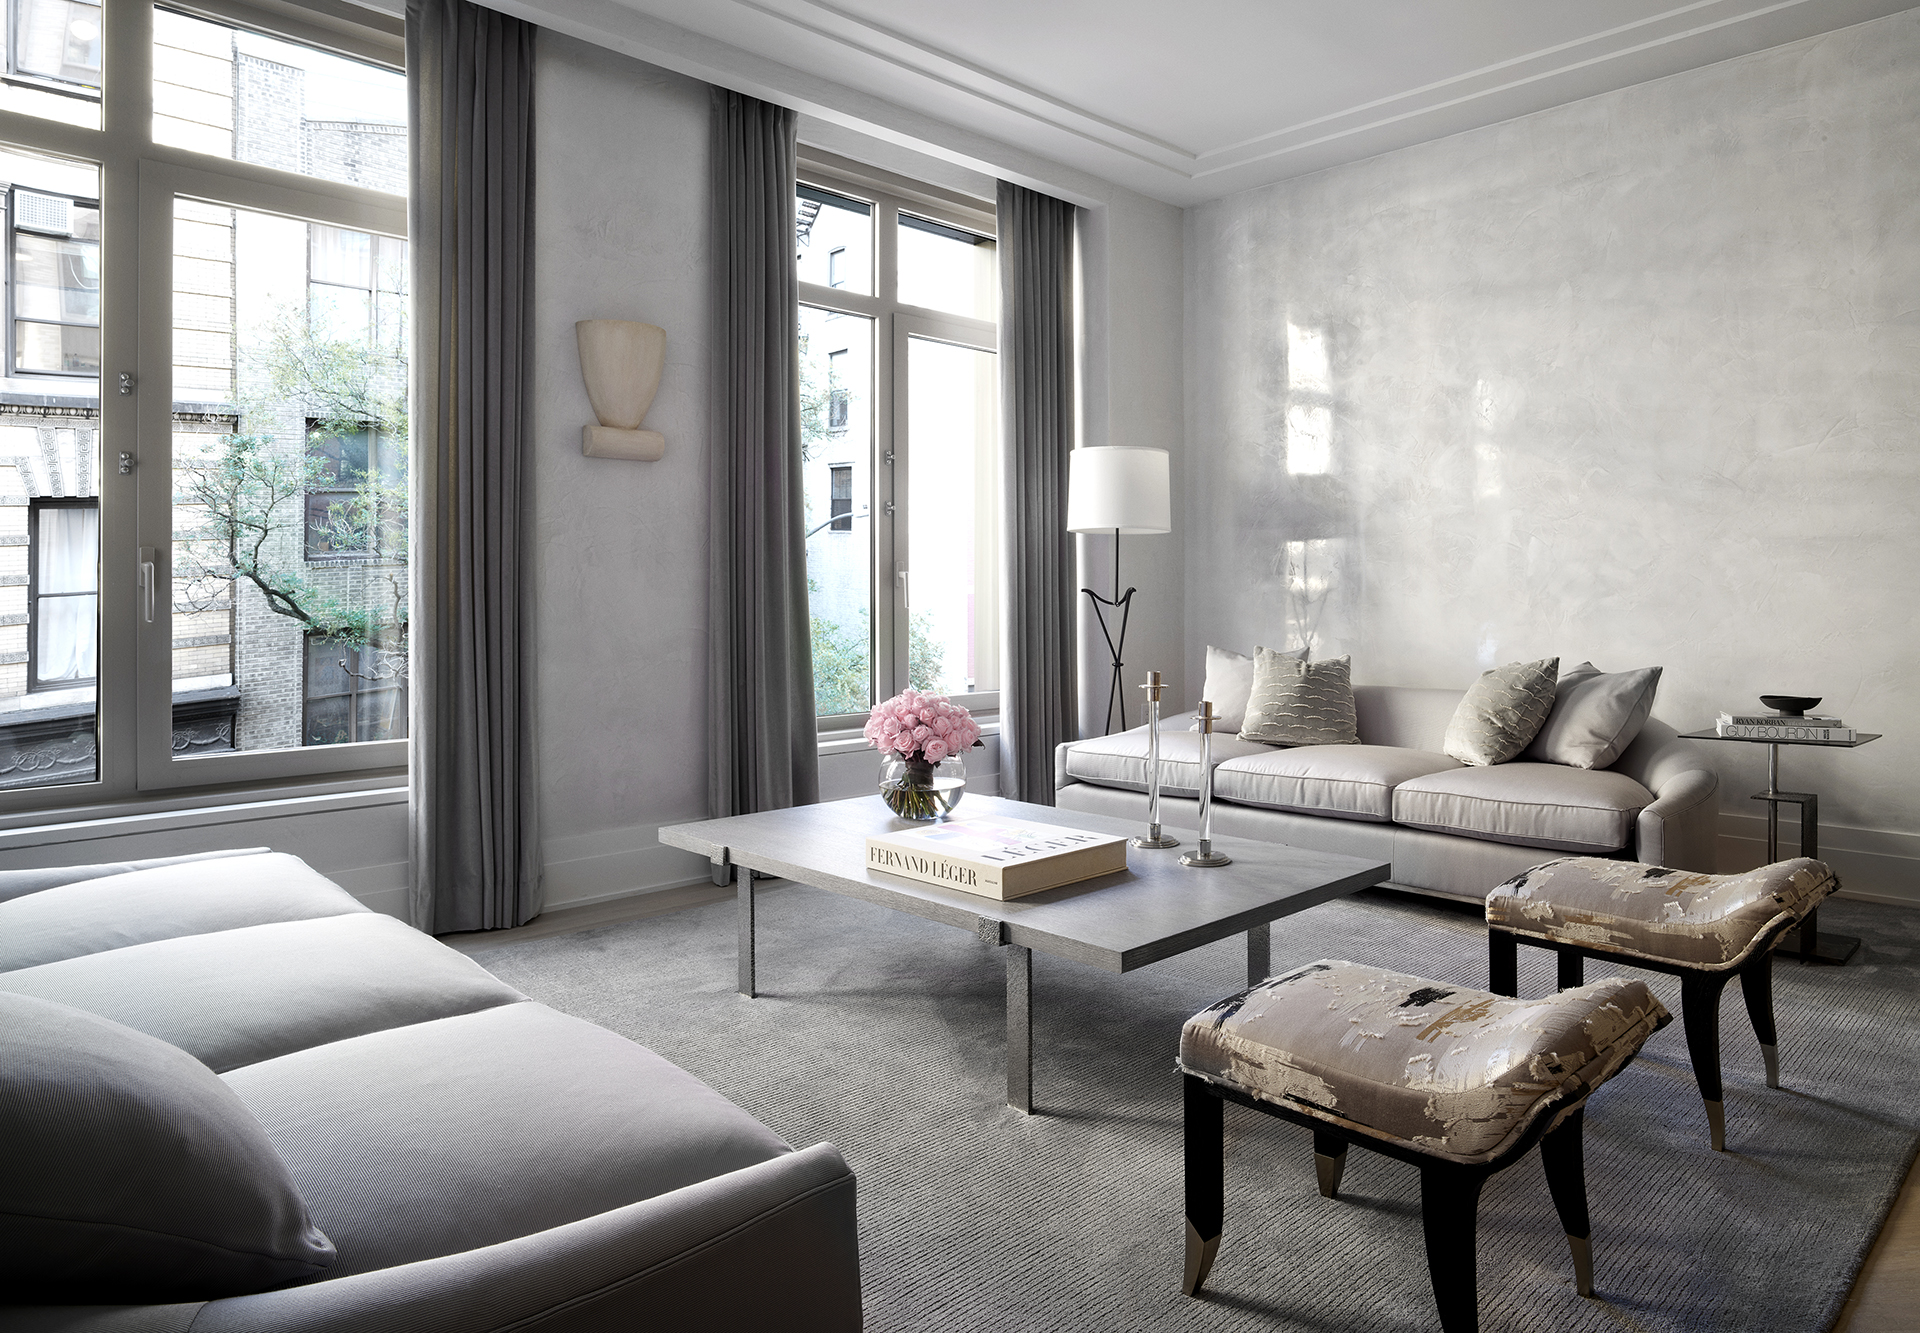 Contemporary living room in grey tones